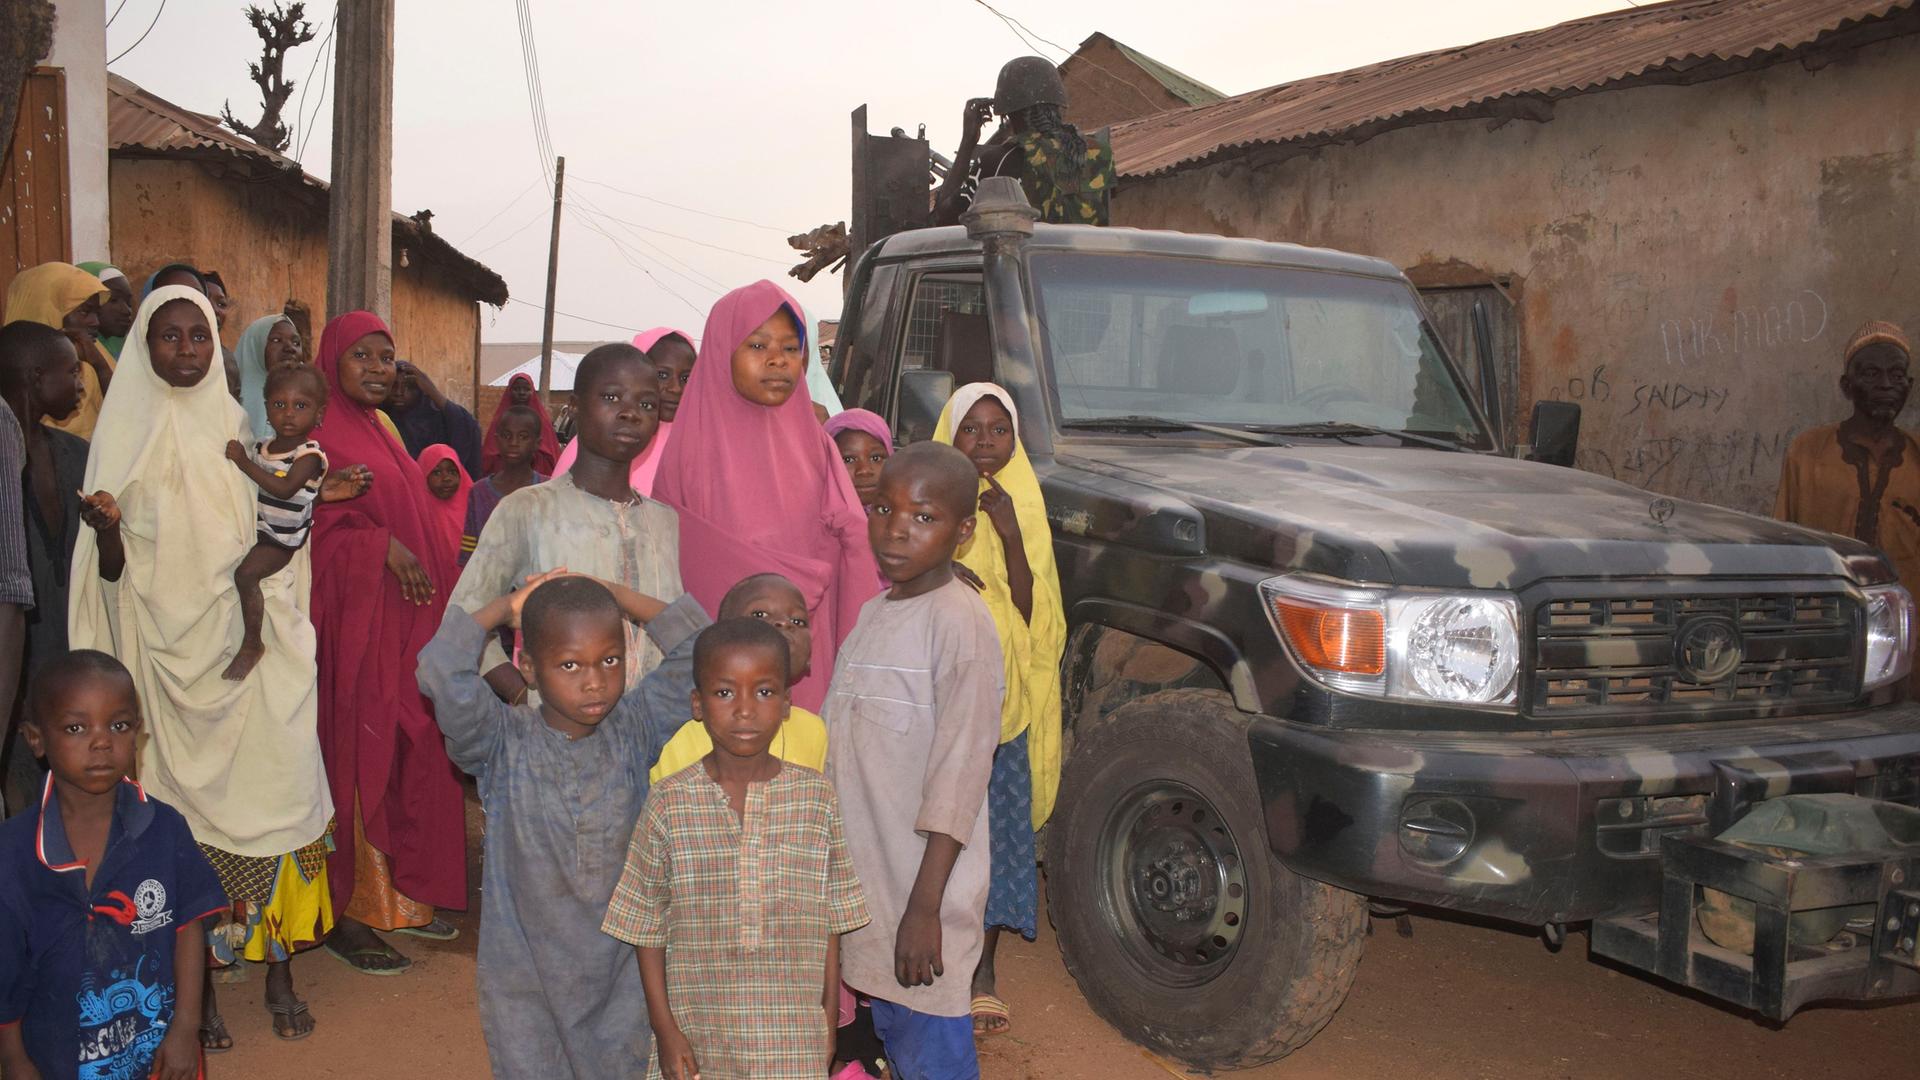 Ein Fahrzeug nigerianischer Sicherheitskräfte wird nach der Entführung von rund 300 Schülerinnen und Schülern von Frauen und Kindern flankiert.